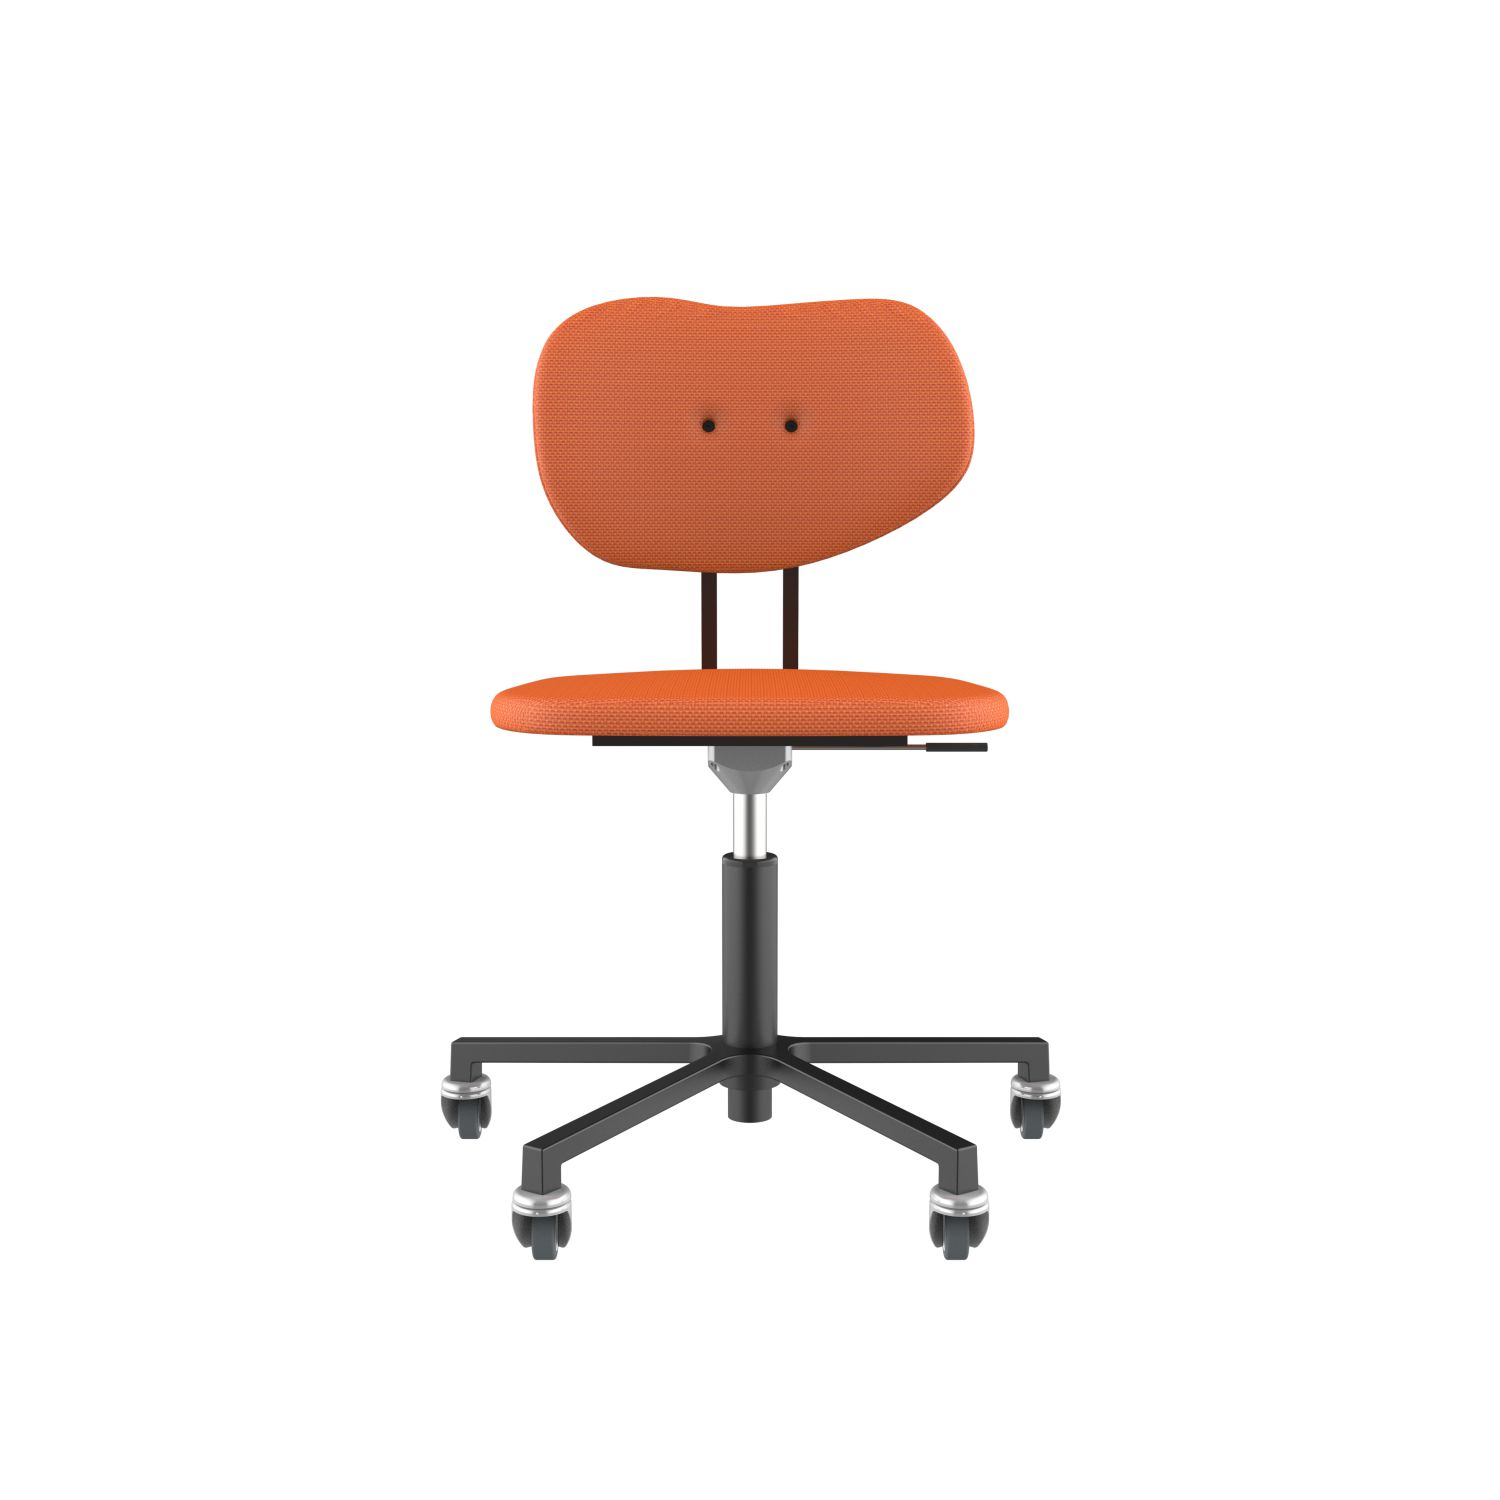 lensvelt maarten baas office chair without armrests backrest b burn orange 102 black ral9005 soft wheels